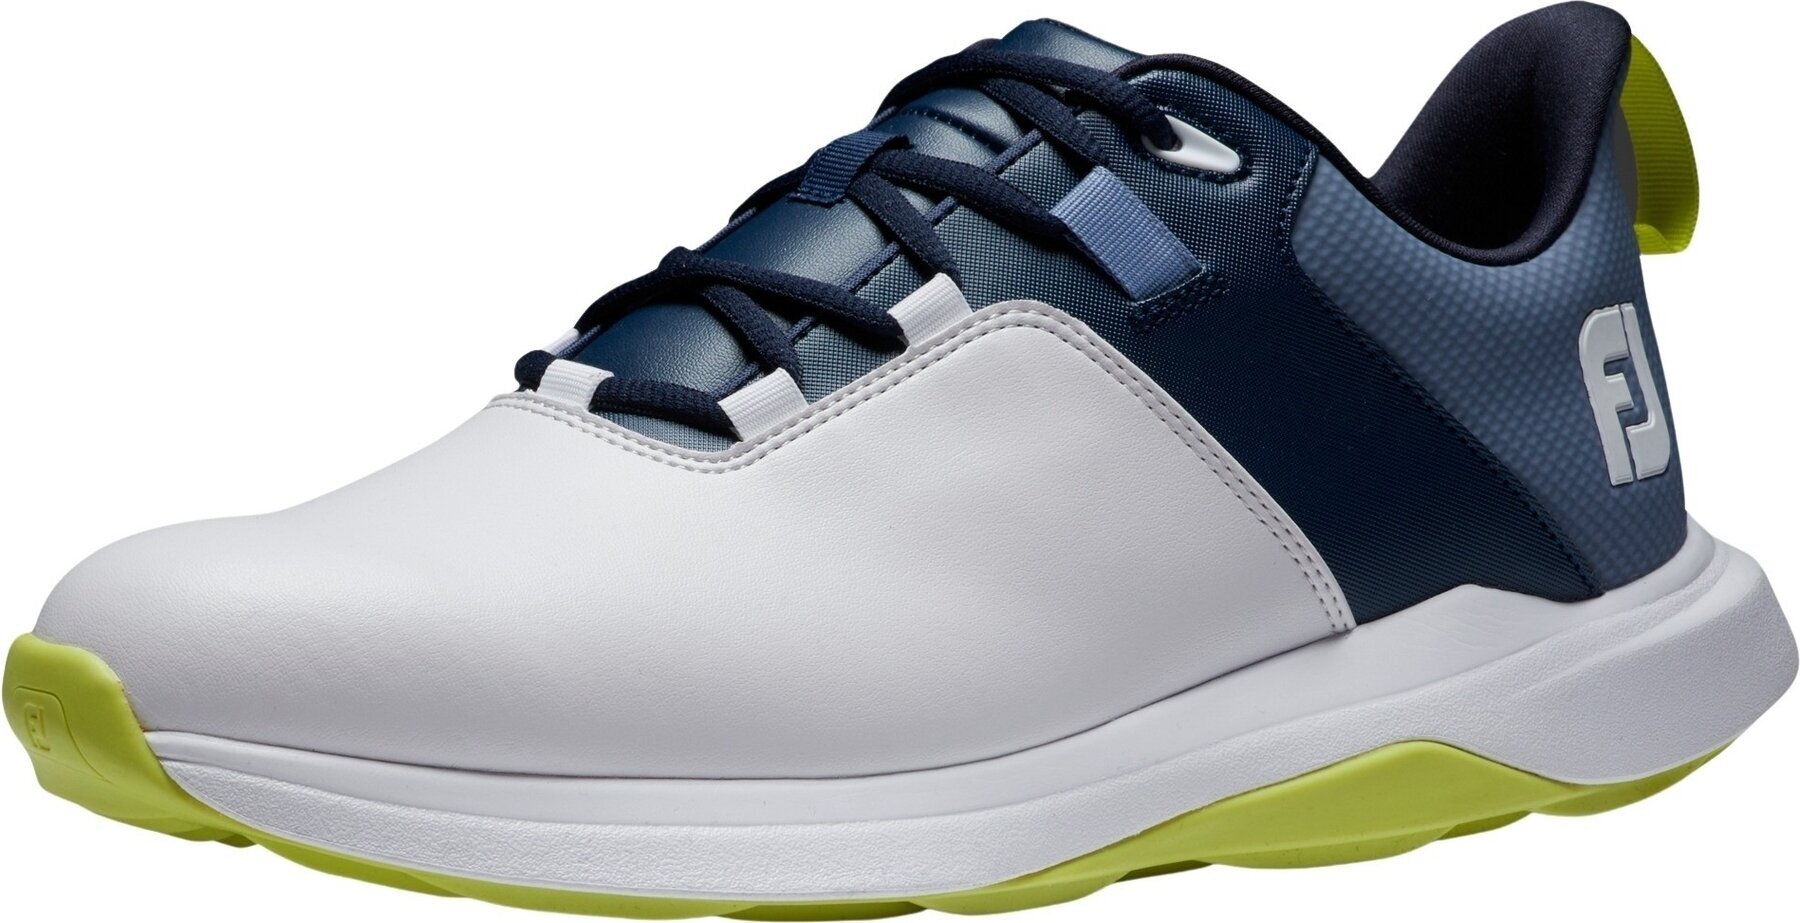 Calçado de golfe para homem Footjoy ProLite Mens Golf Shoes White/Navy/Lime 40,5